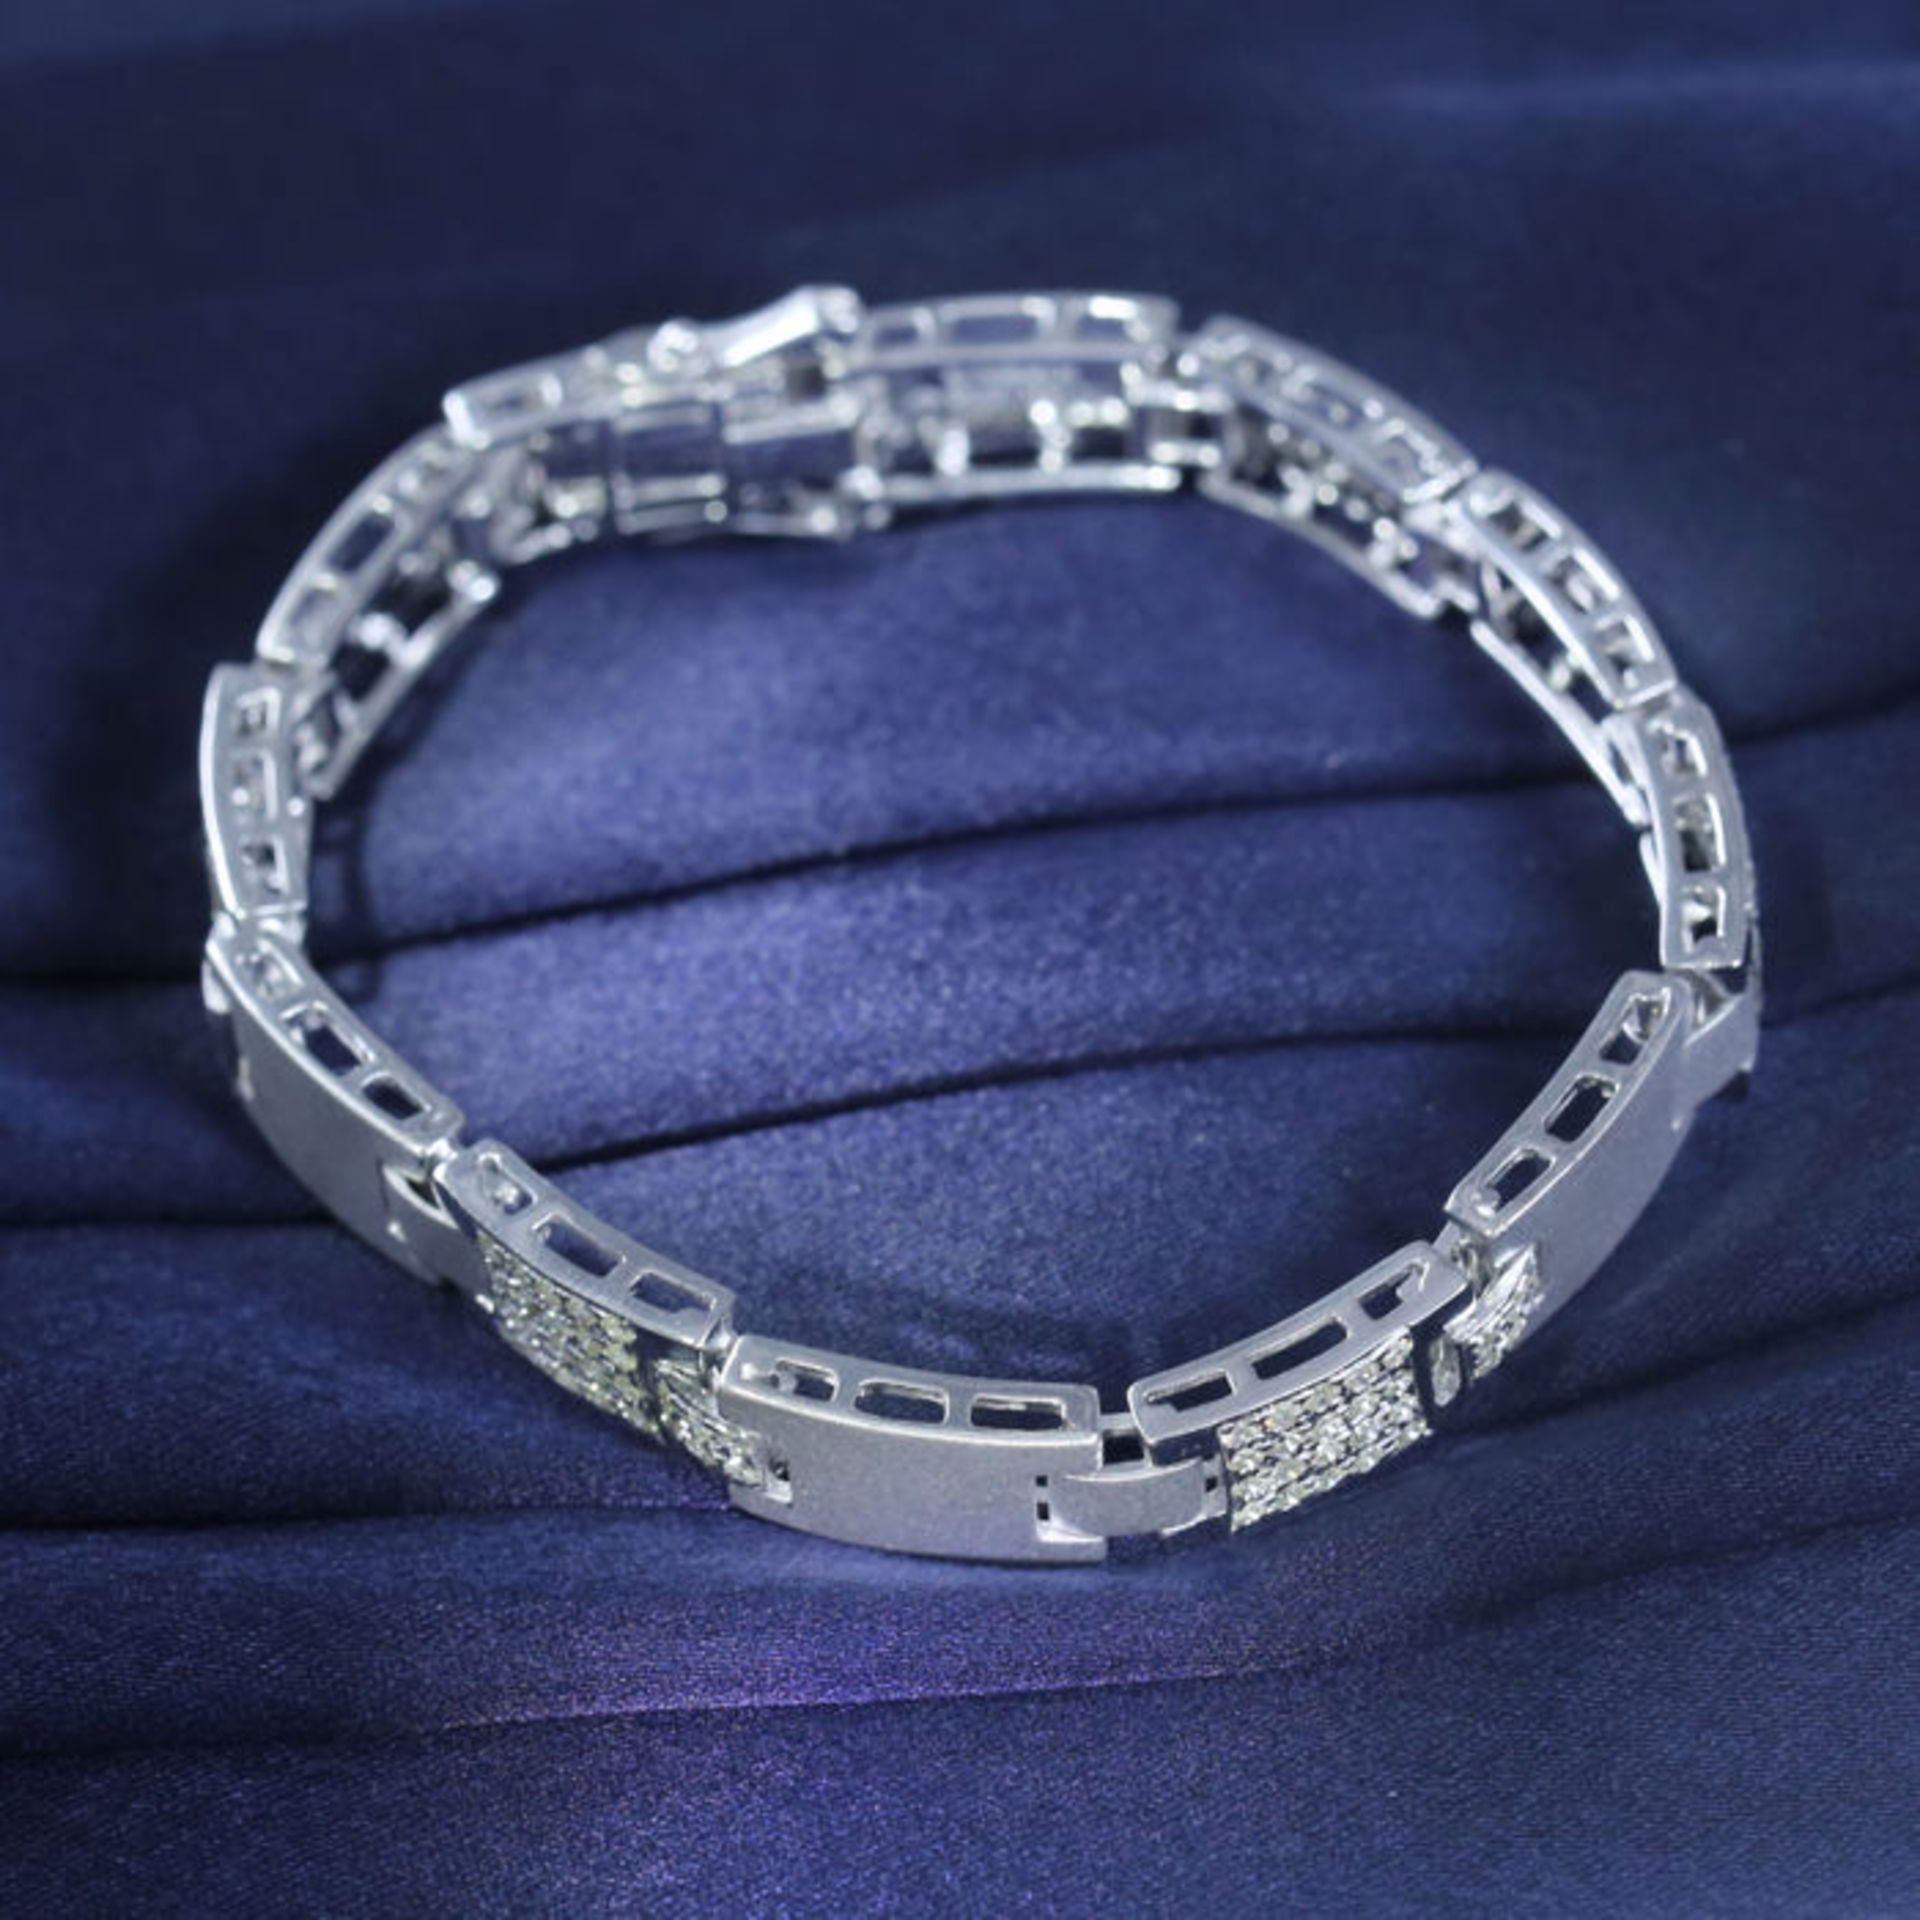 14 K / 585 White Gold Men's Diamond Bracelet - Image 2 of 7